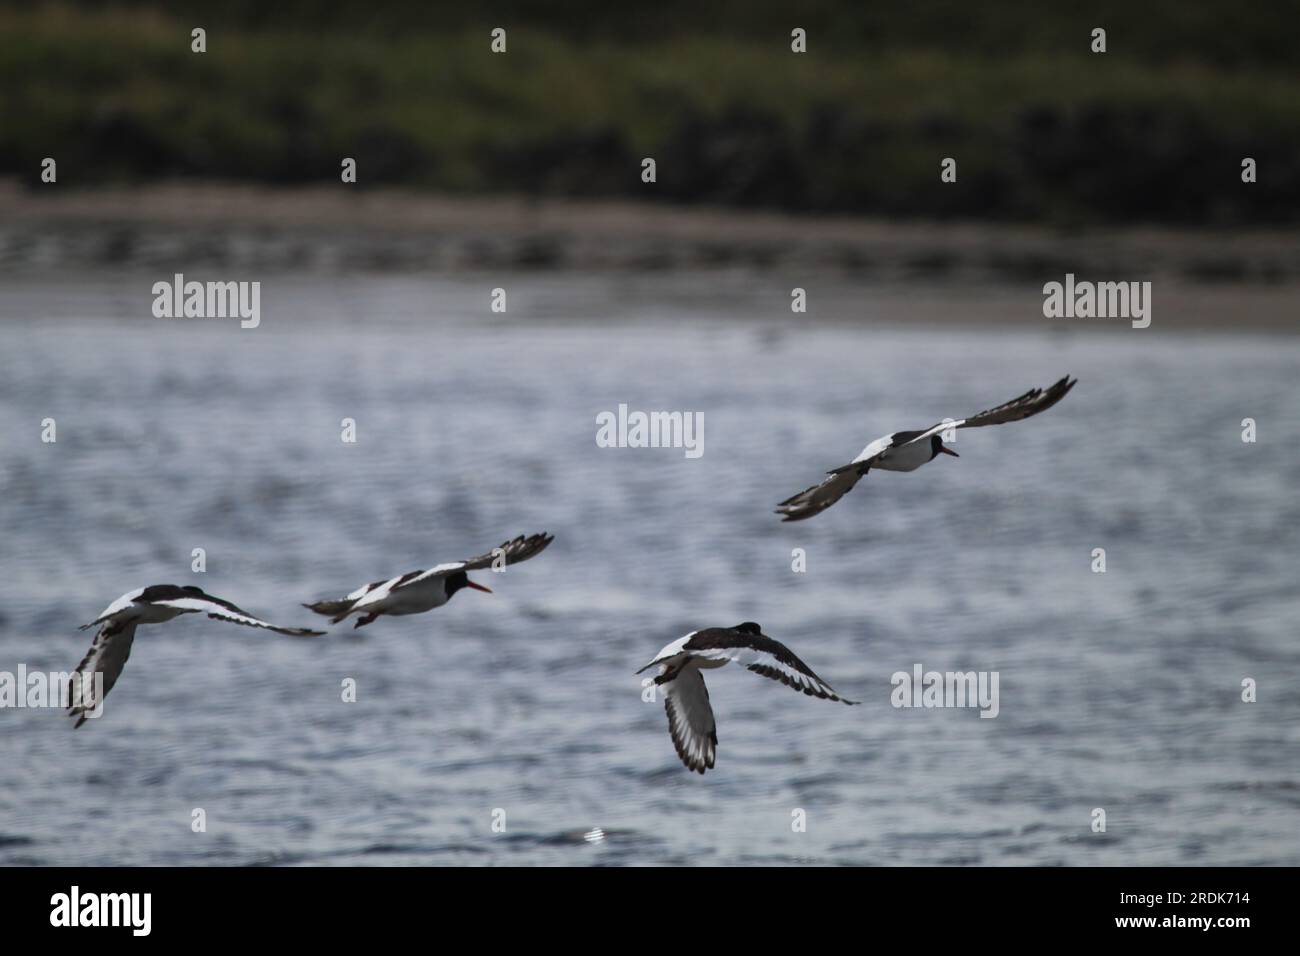 Oystercatchers in flight across Water. Stock Photo